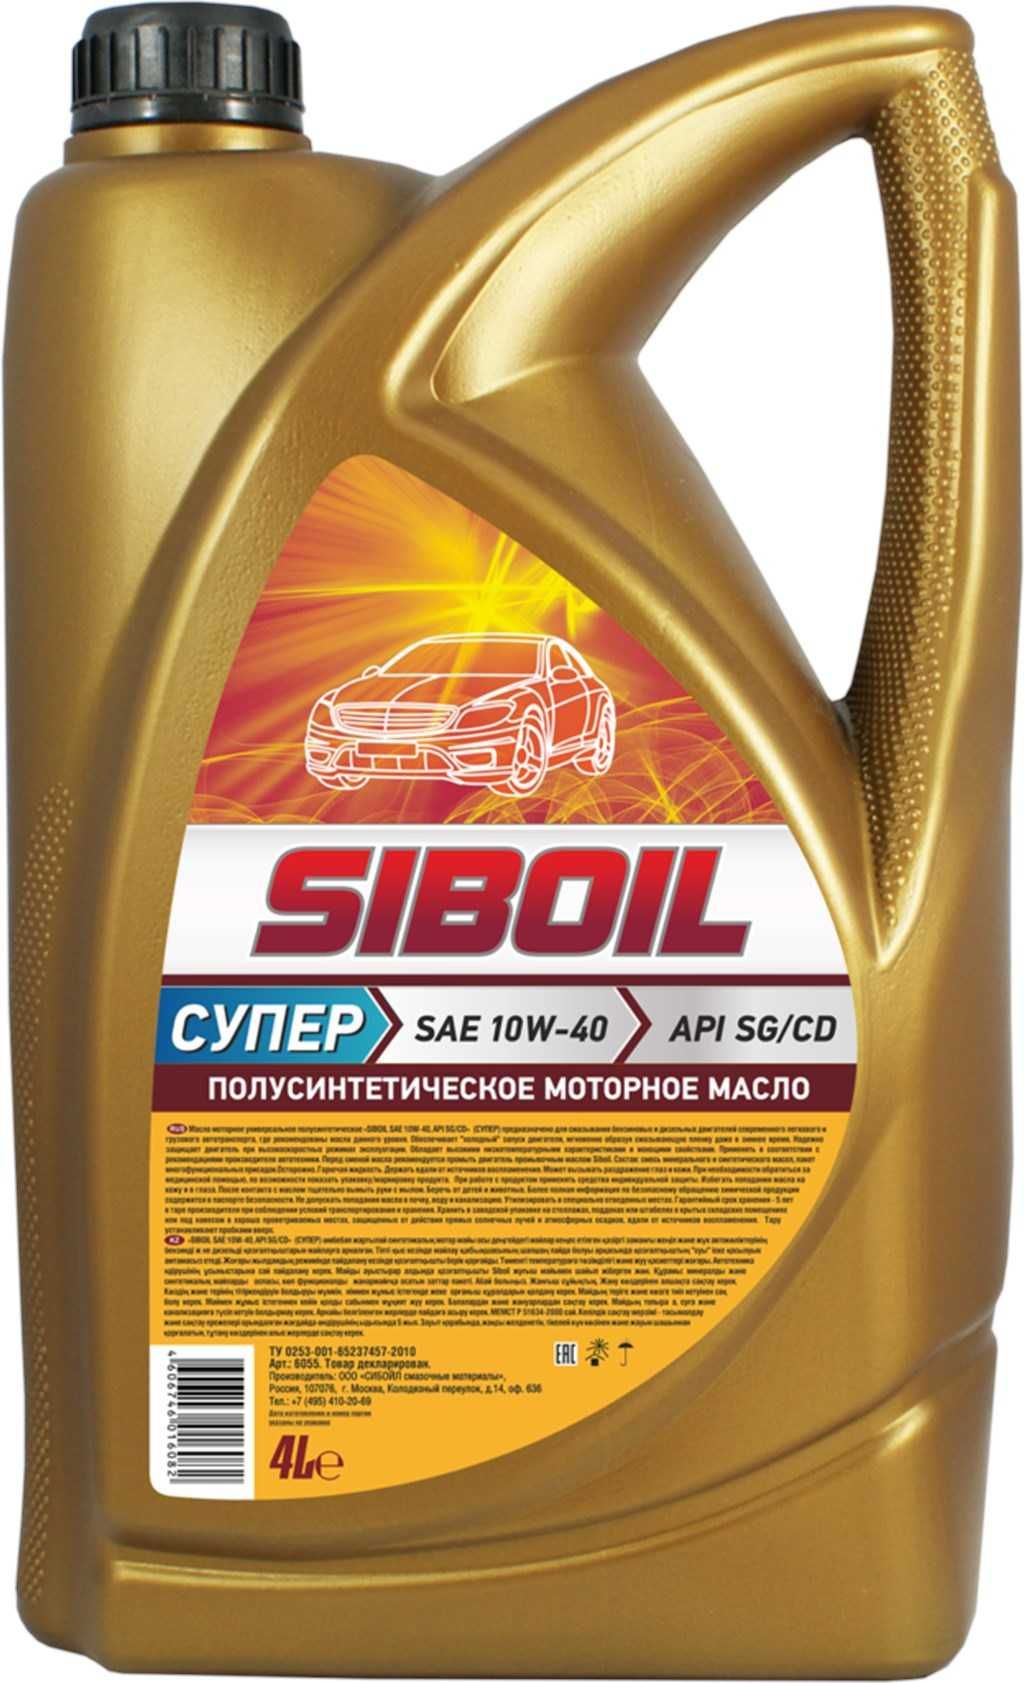 Моторные масла Siboil